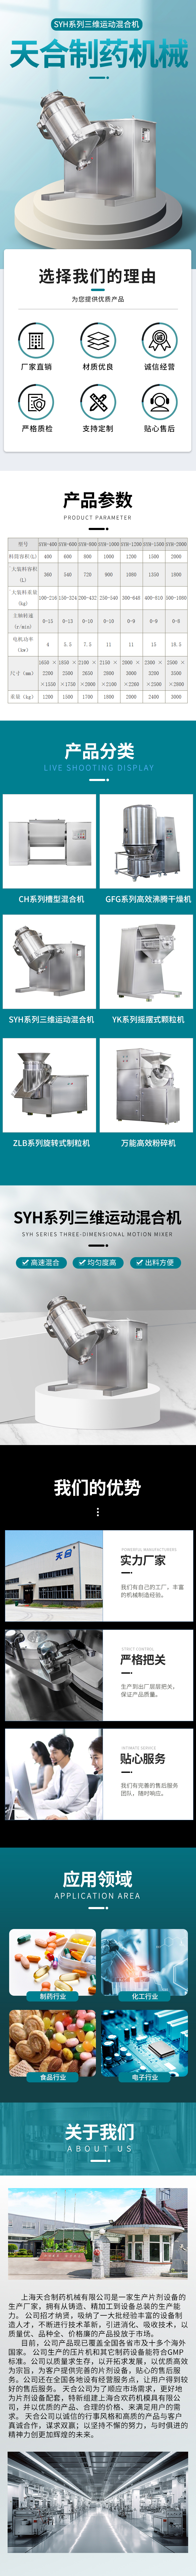 01天合-SYH系列三维运动混合机.jpg